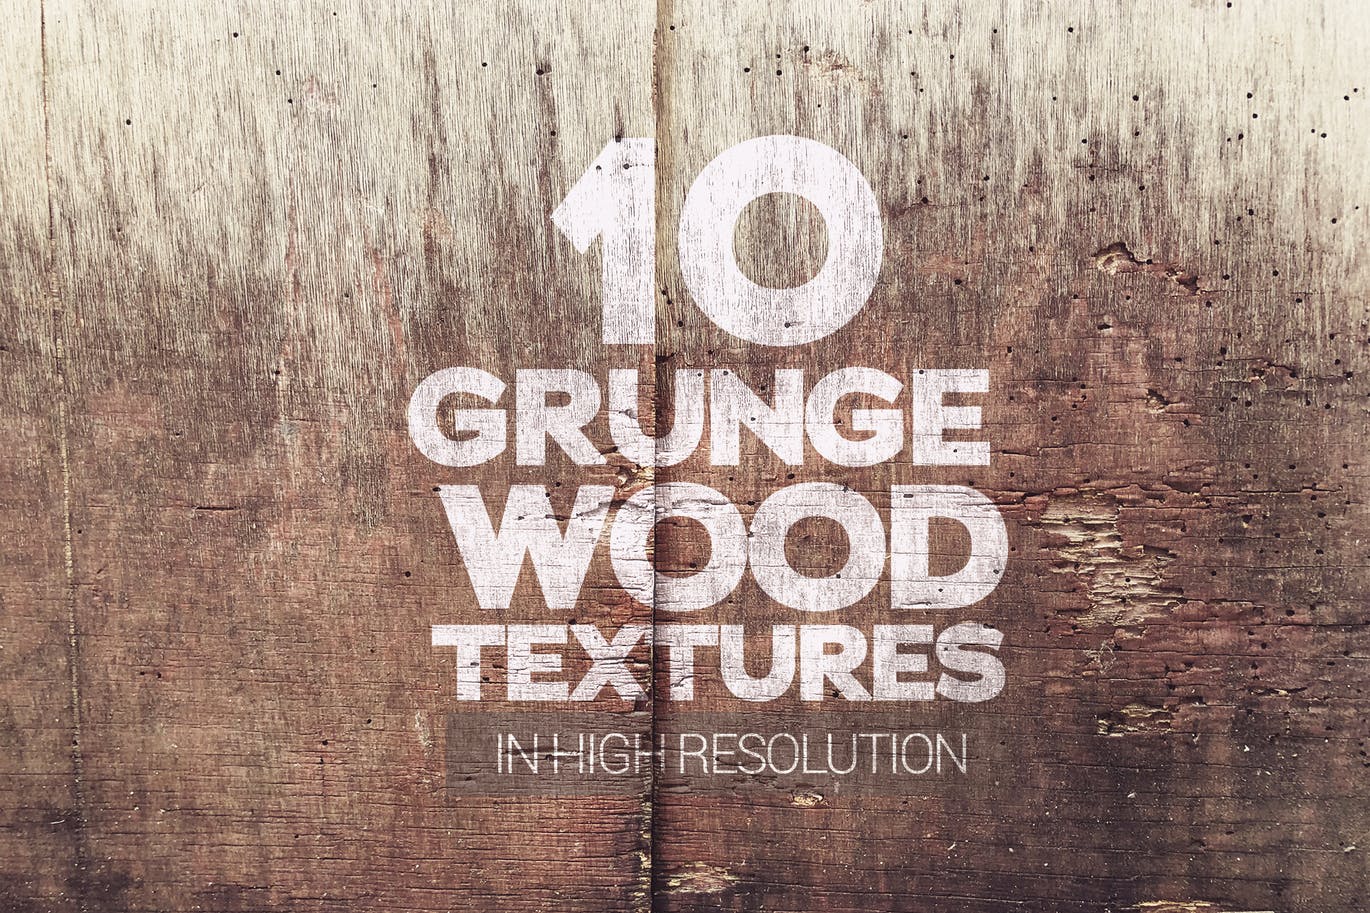 Ten grunge wood textures set